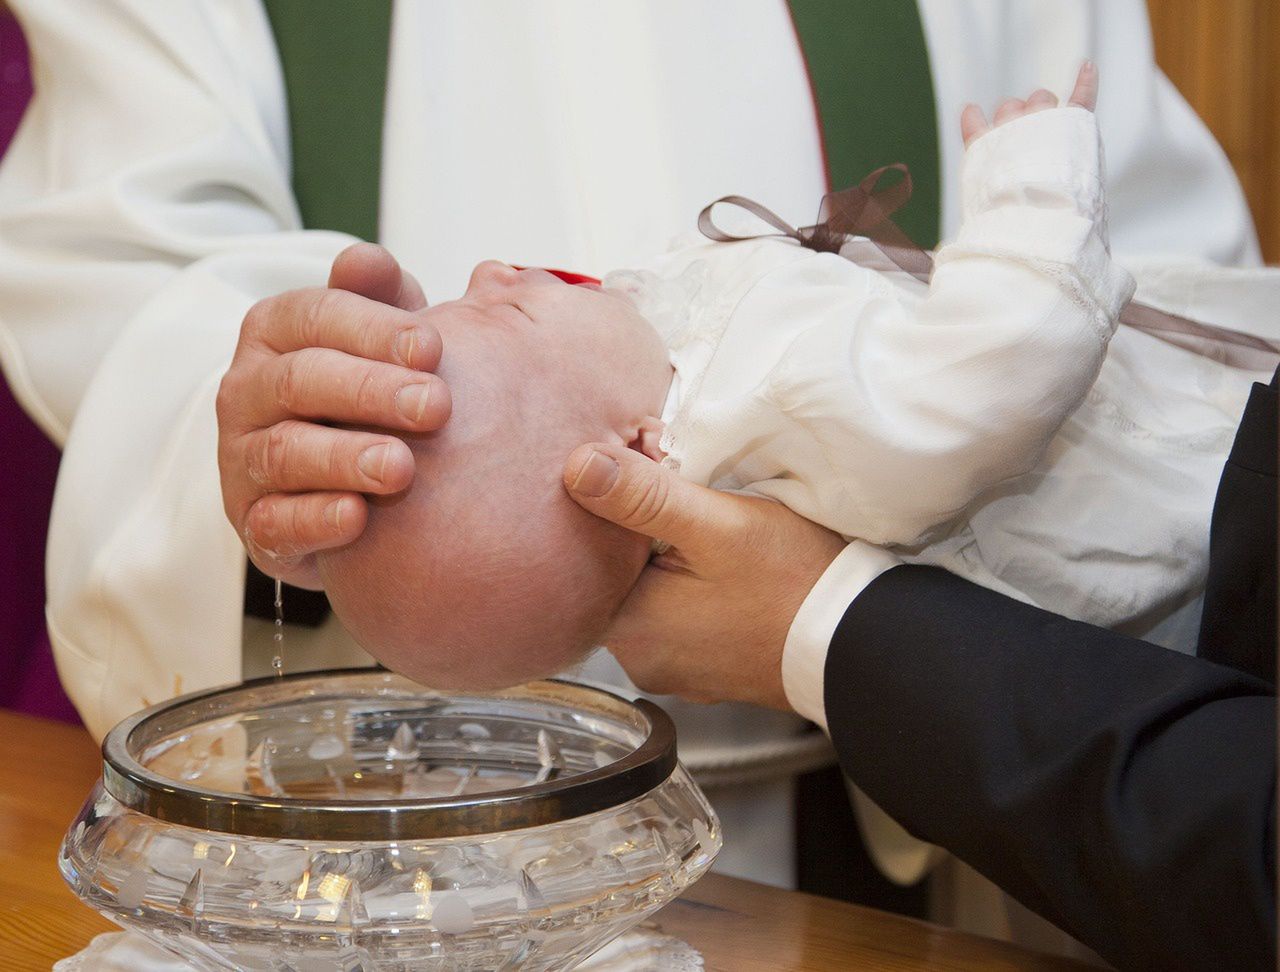 Za chrzest w święta ksiądz może chcieć większej opłaty? "Weźmie od nas podwójną kwotę"